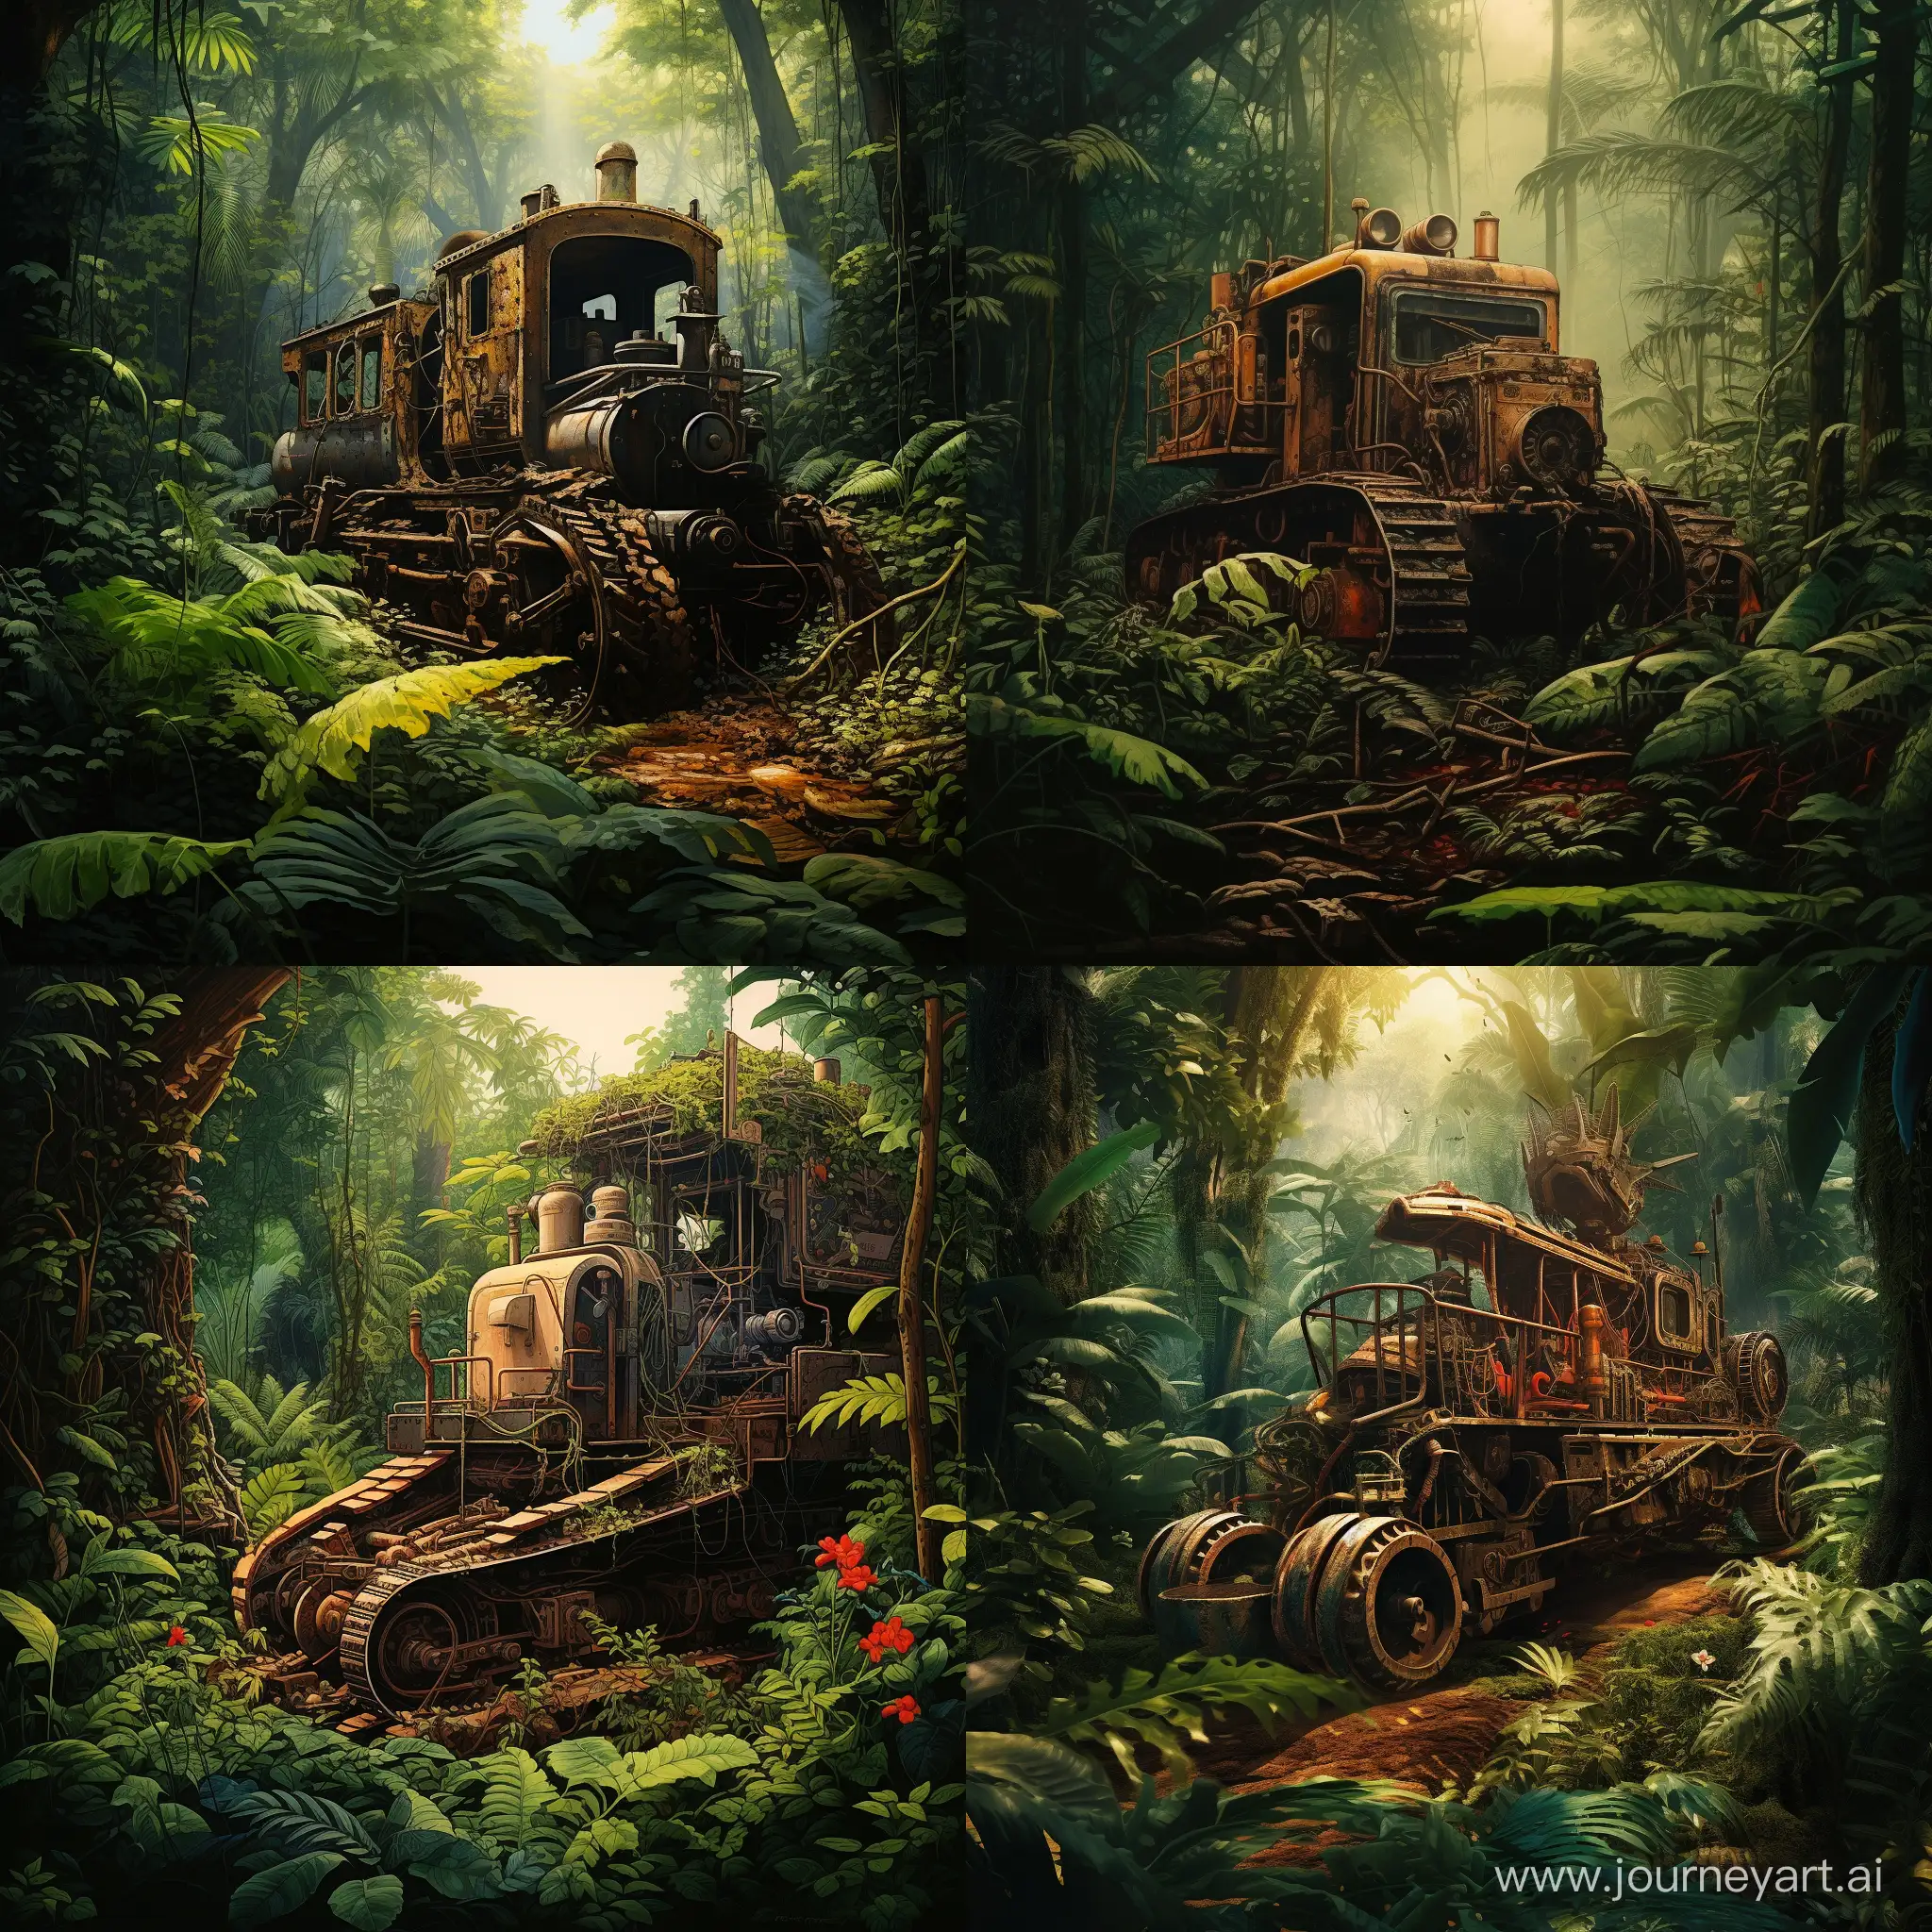 Трактор, застрявший в лианах в тропическом лесу. Его пытается вытащить паровоз